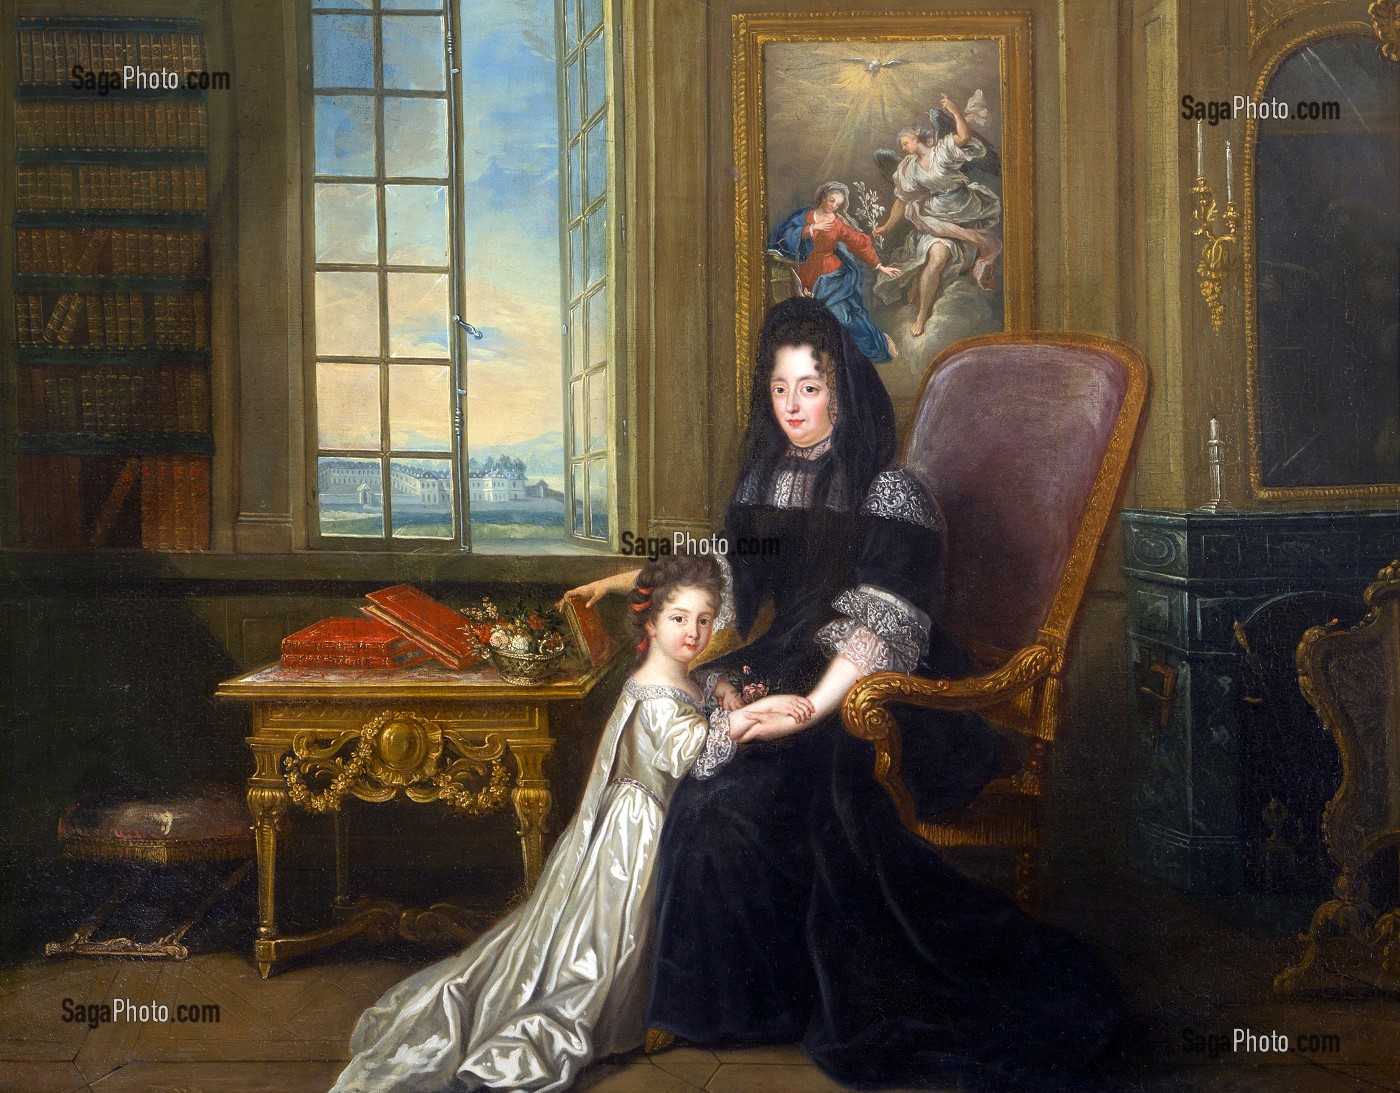 MADAME LA MARQUISE DE MAINTENON (1635-1719), NEE FRANCOISE D'AUBIGNE, ET DE SA NIECE FRANCOISE AMABLE D'AUBIGNE (1684-1739), PEINTURE DE 1719 D'APRES LOUIS-FERDINAND ELLE, CHATEAU DE MAINTENON, EURE-ET-LOIR (28), FRANCE 